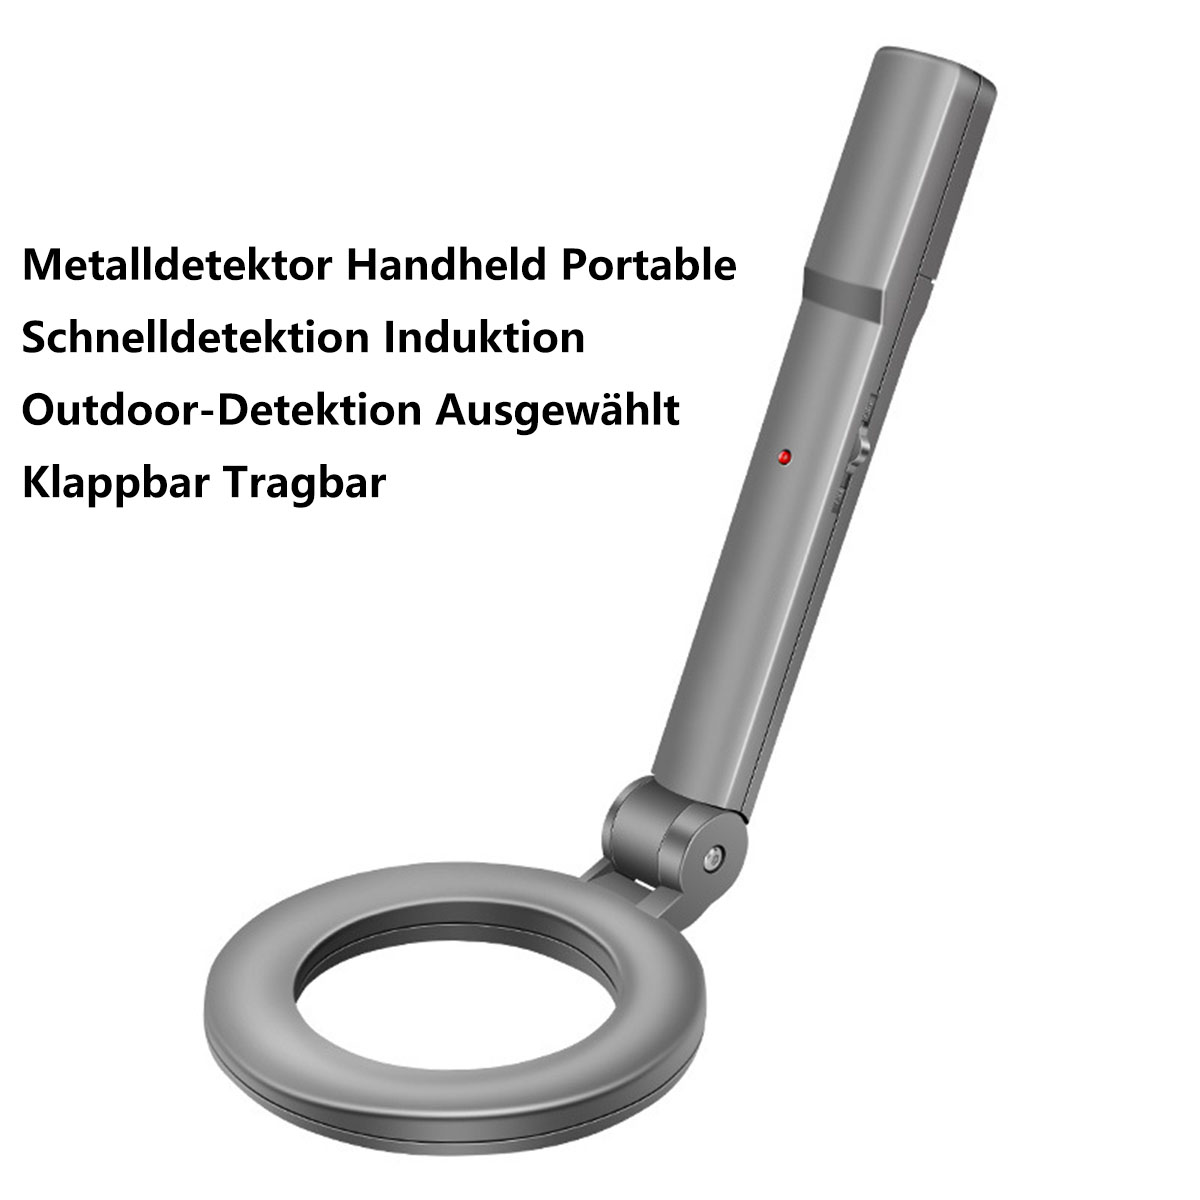 BYTELIKE Metalldetektor Handheld hochempfindliche Outdoor Checker Exploration Sicherheit Metalldetektor, Silber